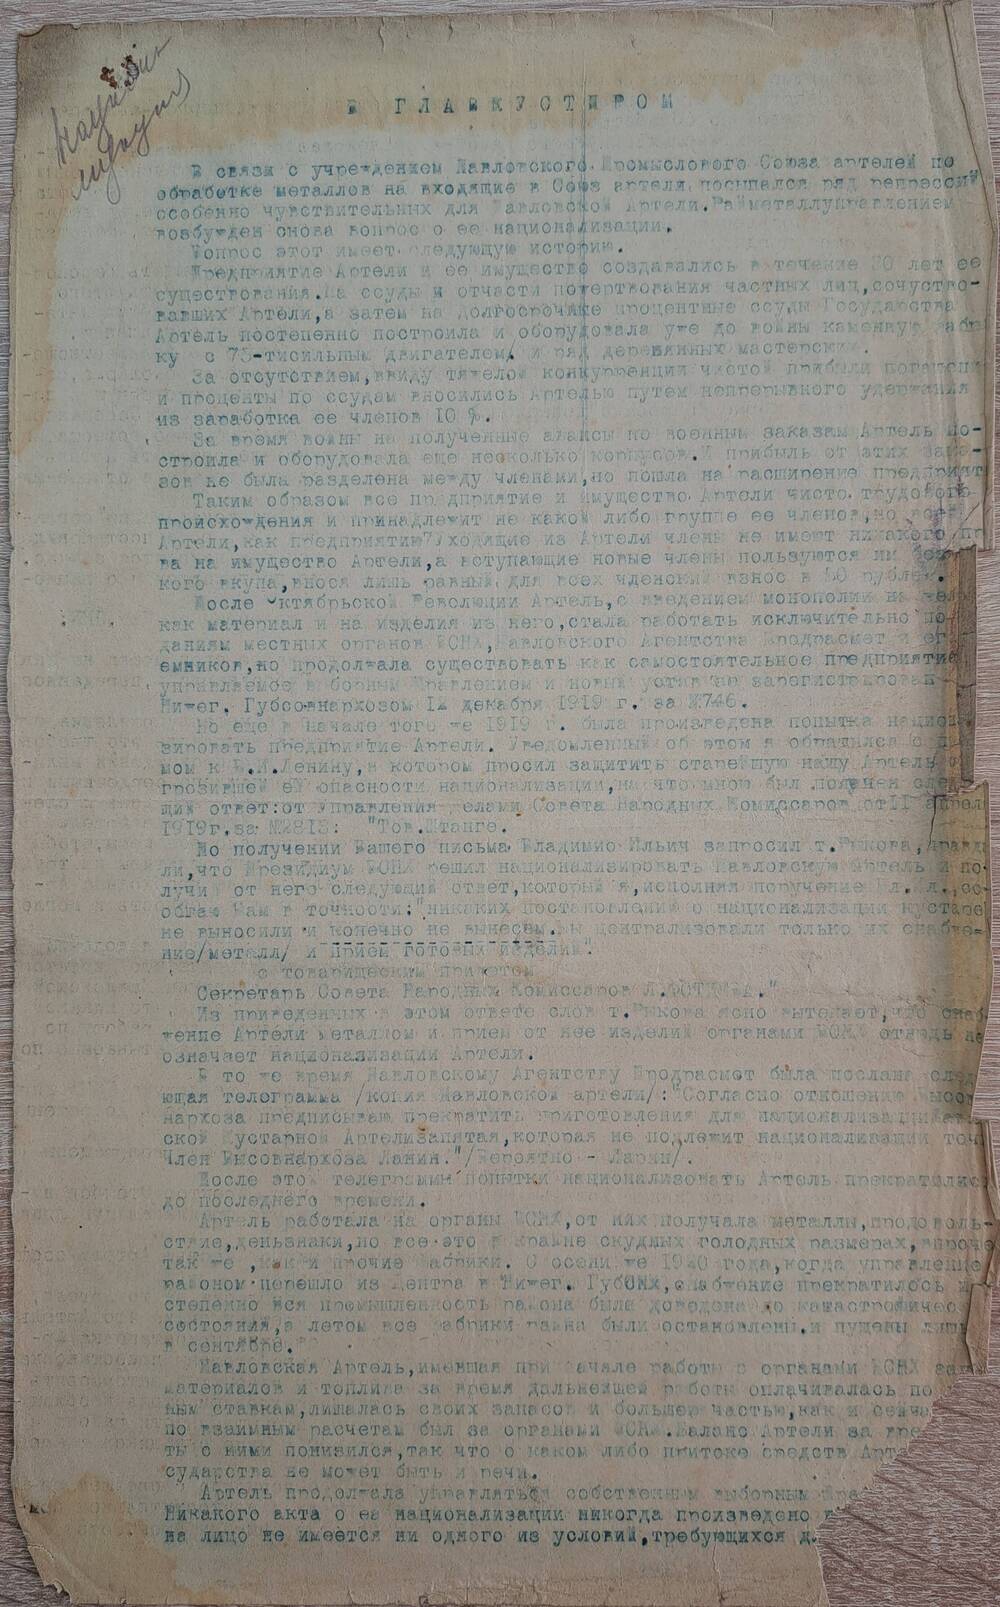 Письмо в Главкустпром о национализации артели от Председателя правления Павловской артели 12 декабря 1922 г.